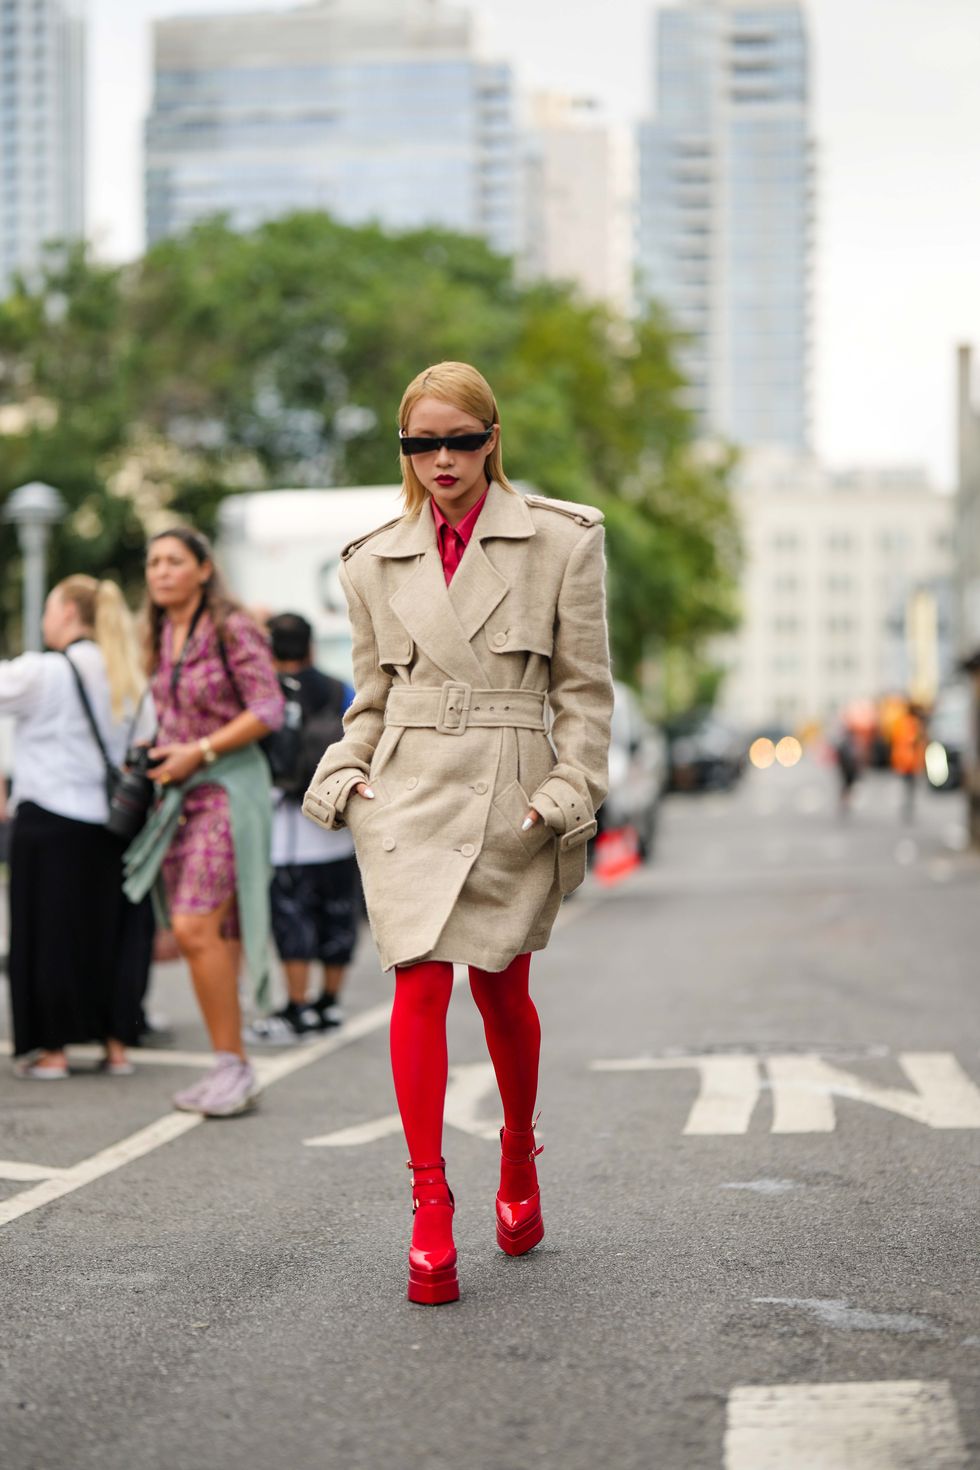 Medias y calcetines rojos, así se lleva la tendencia que arrasa en Instagram